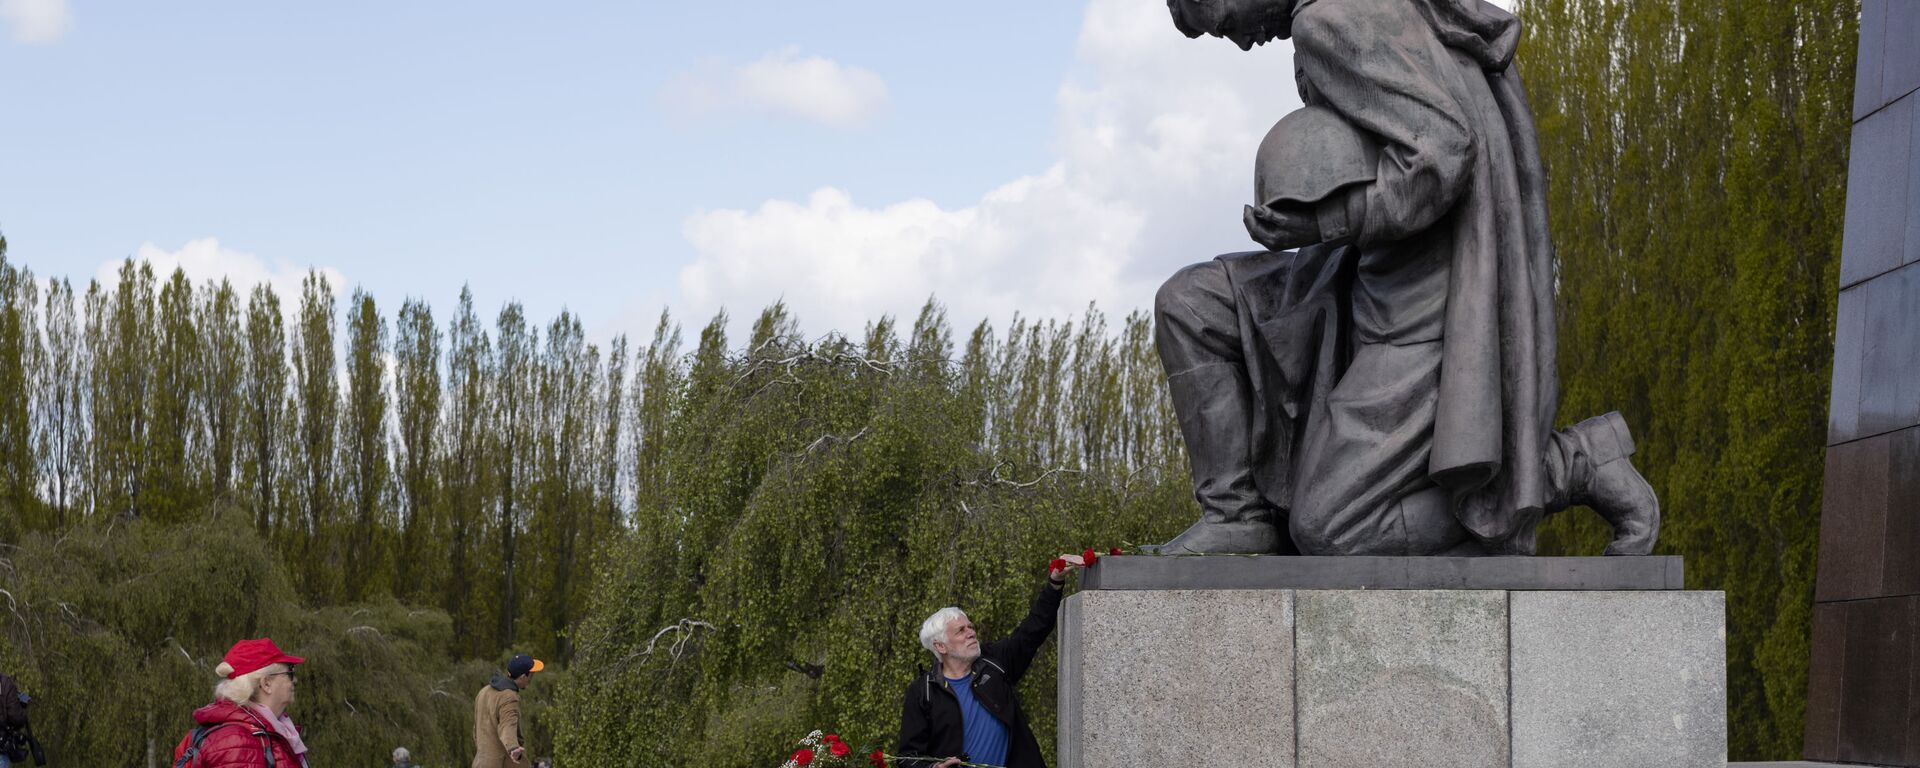 Мужчина возлагает цветы к памятнику советскому солдату на военном мемориале в Трептов-парке в Берлине в ознаменование 76-й годовщины окончания Второй мировой войны - Sputnik Mundo, 1920, 08.05.2021